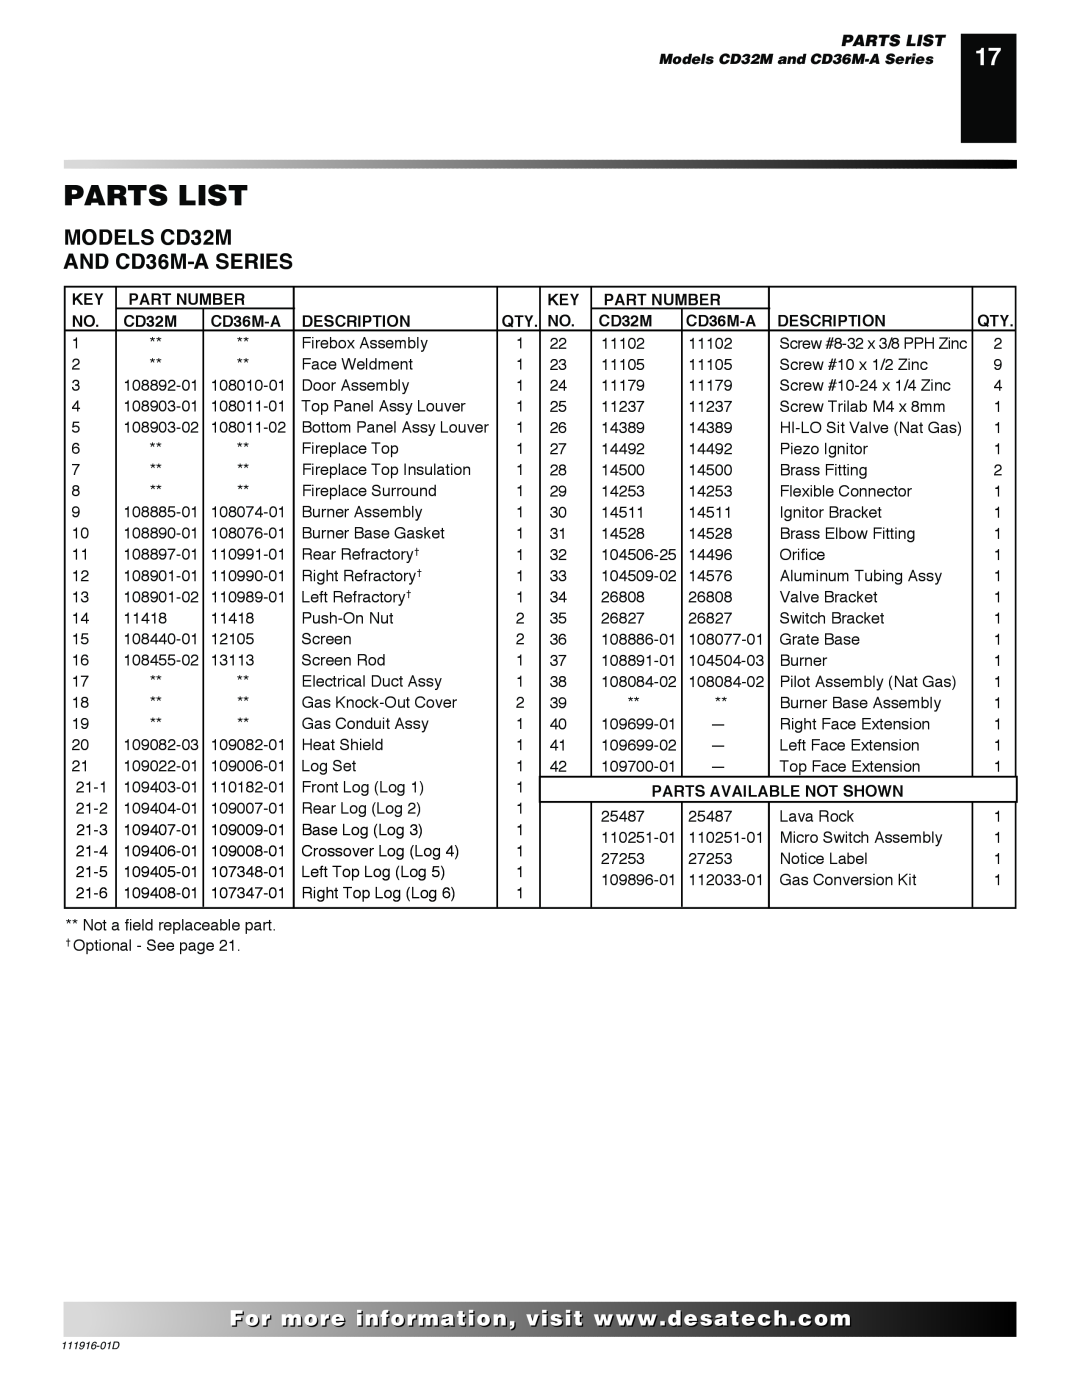 Desa CD36M, CD32M, CD42M Parts List, For..com, Part Number, CD36M-A, Description, Parts Available Not Shown 